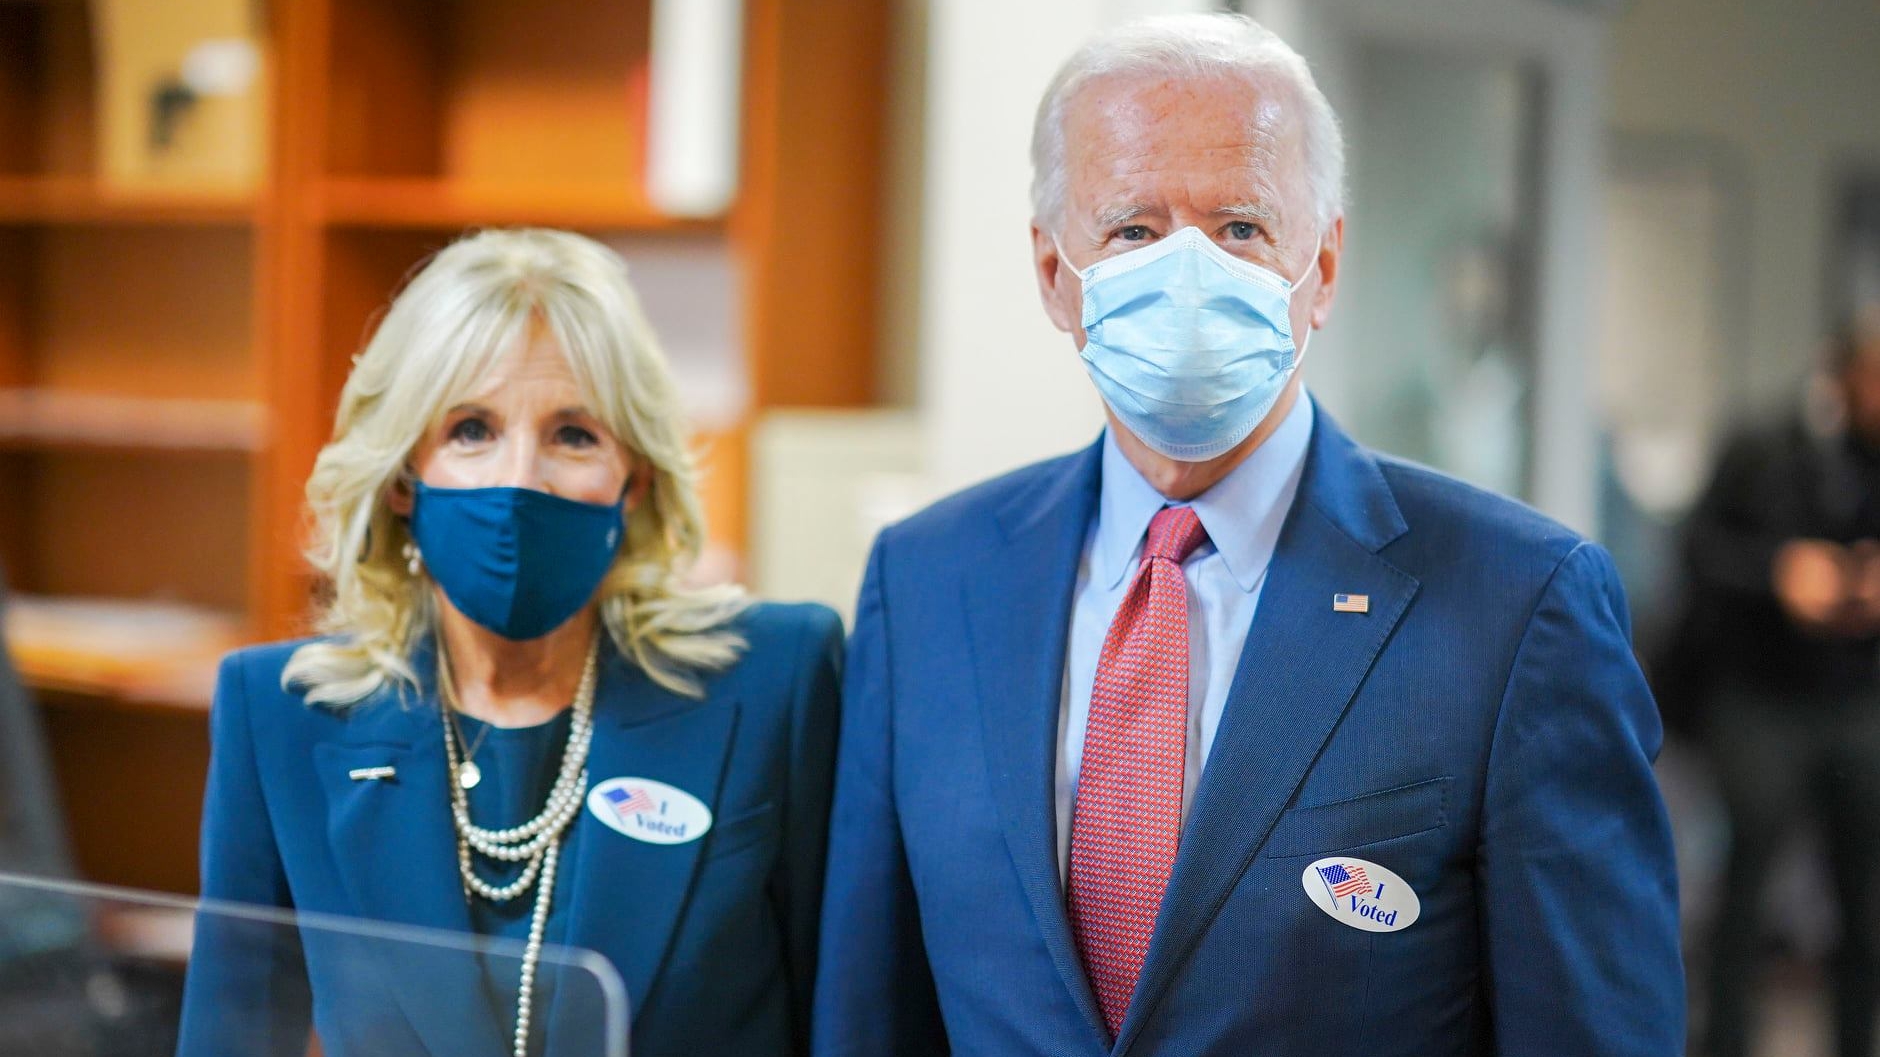 Joe și Jill Biden